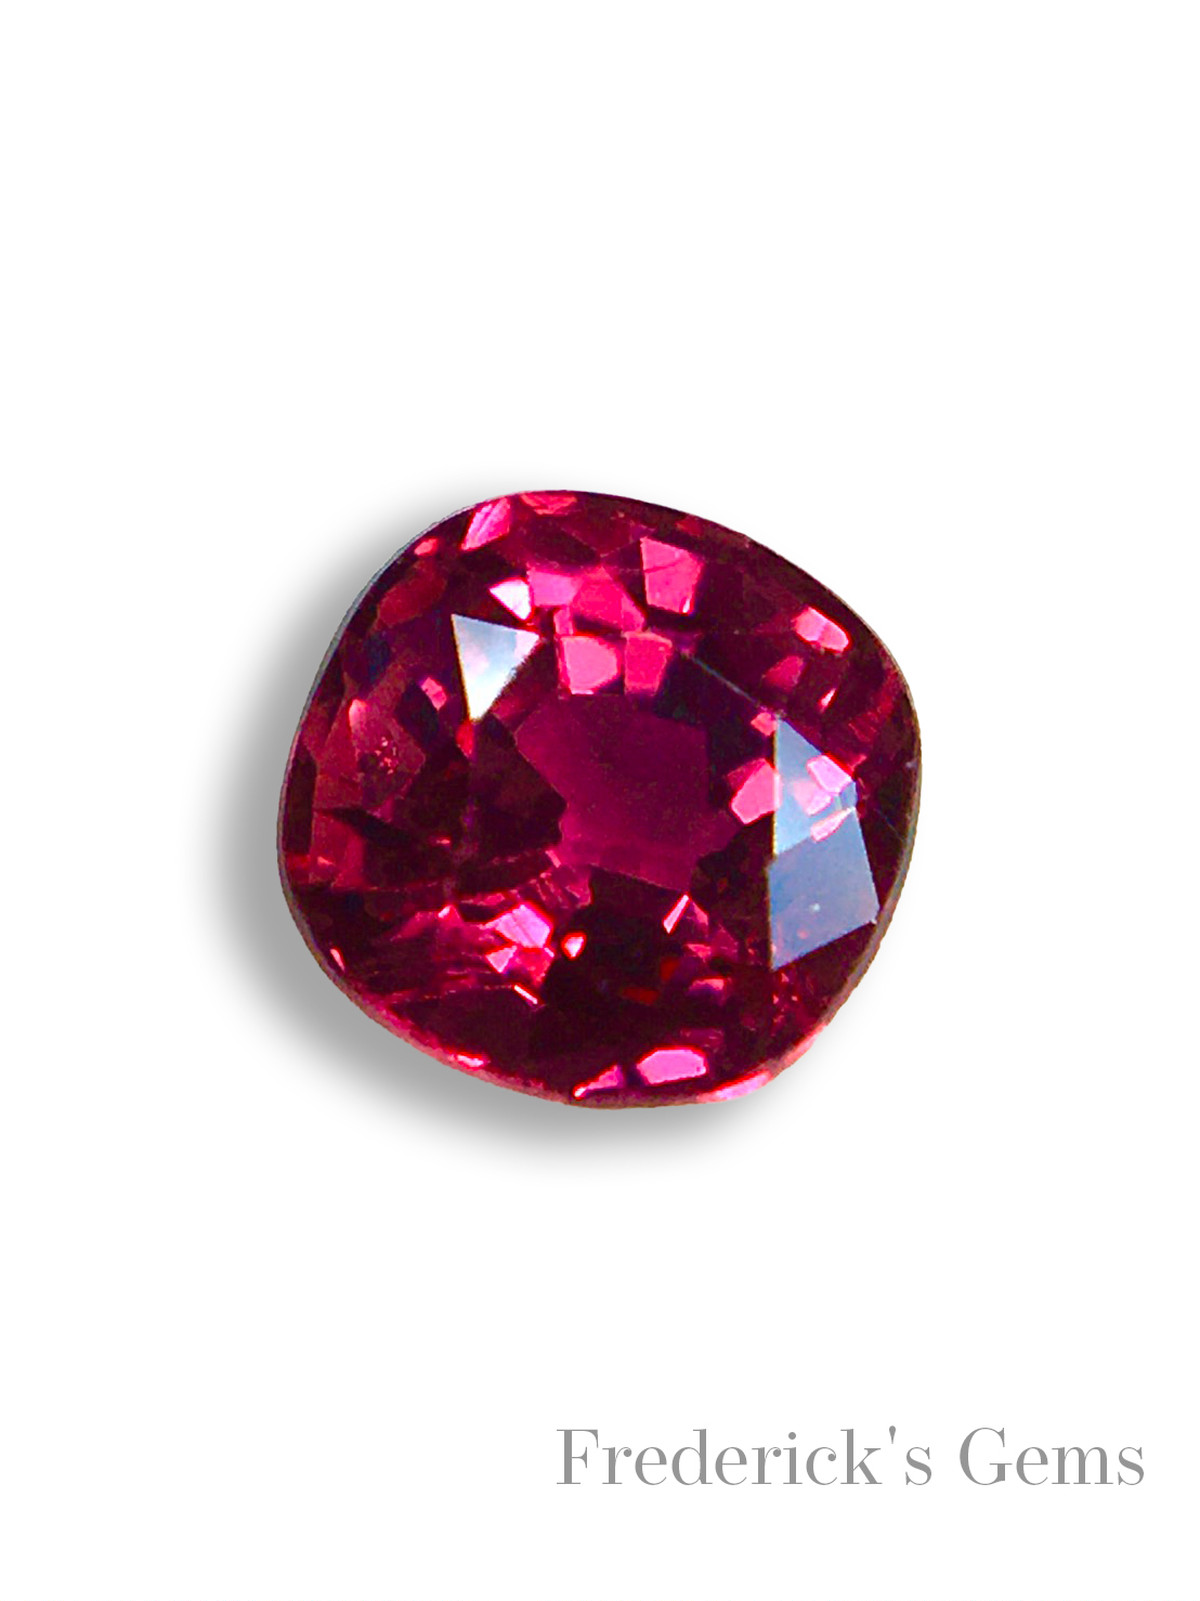 生命力溢れる"緋色"の宝石 0.4ct UP 天然 ルビー ルース | Frederick’s Gems&Jewelry